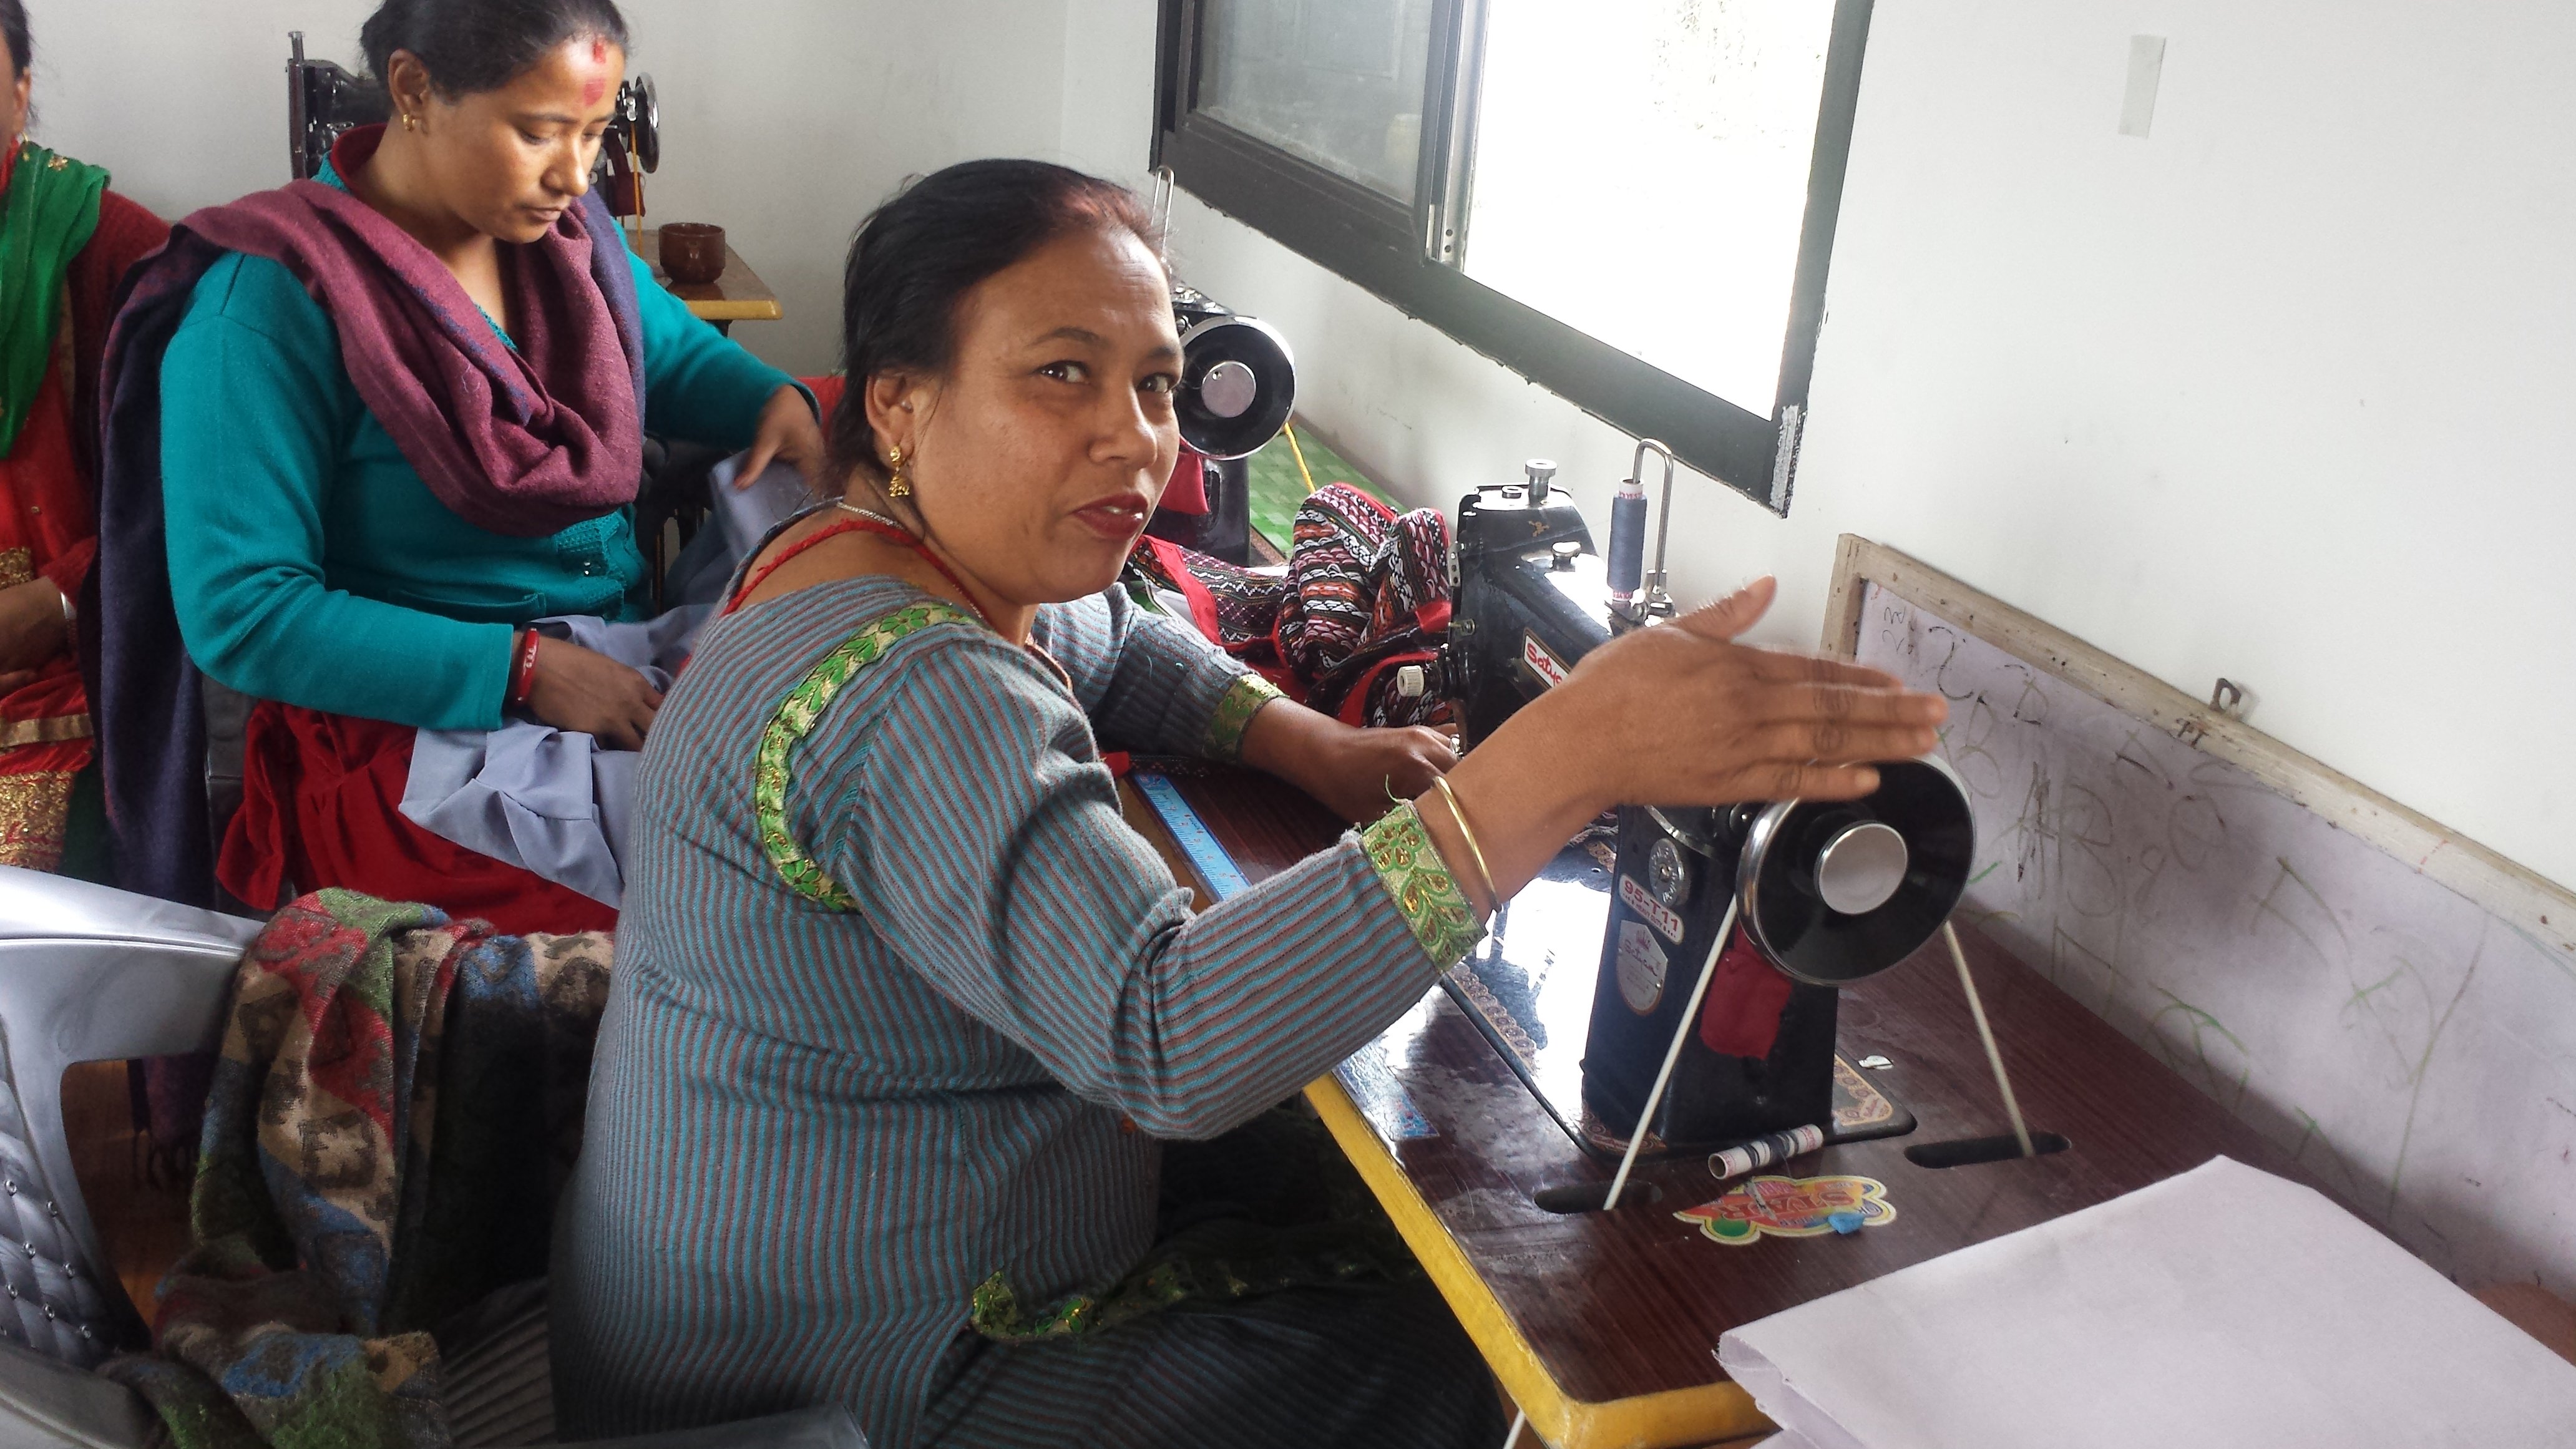 裁缝合作社主席Rajya Laxmi ，希望透过和成员分享知识，能令更多妇女靠手艺脱贫自立。（摄影︰李宝琪/乐施会）